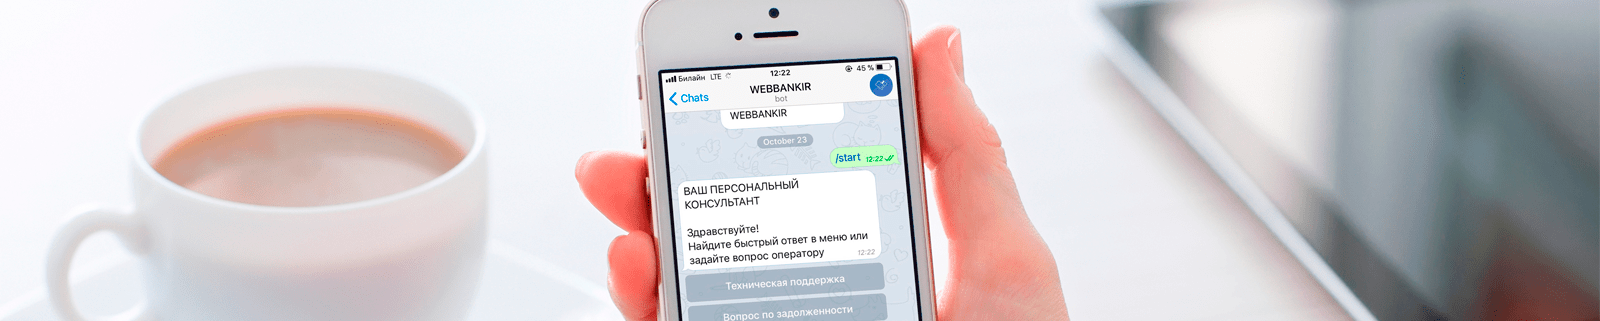 Приложение Telegram используют для теневого рынка